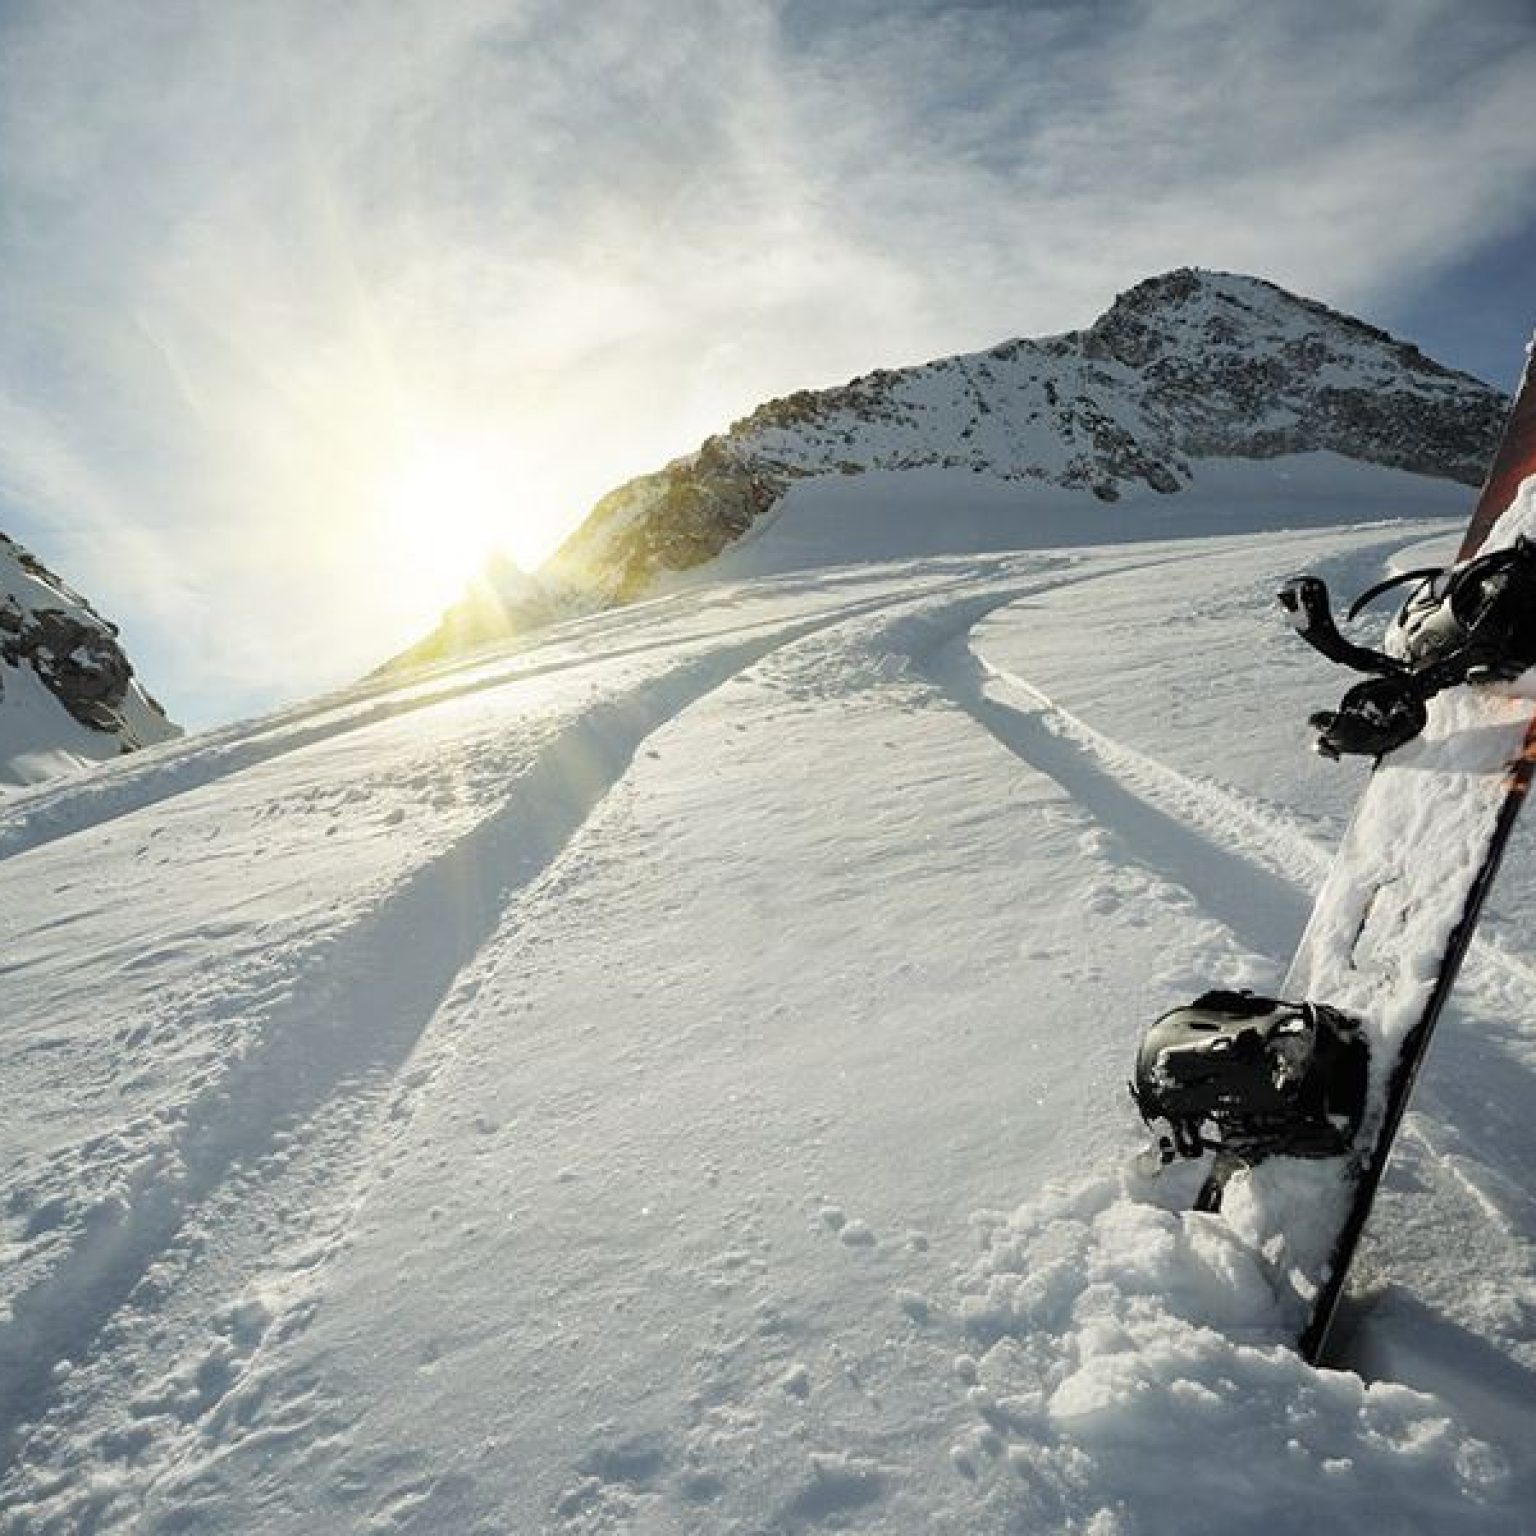 Правила провоза горнолыжного оборудования на самолете: лыжи и сноуборд